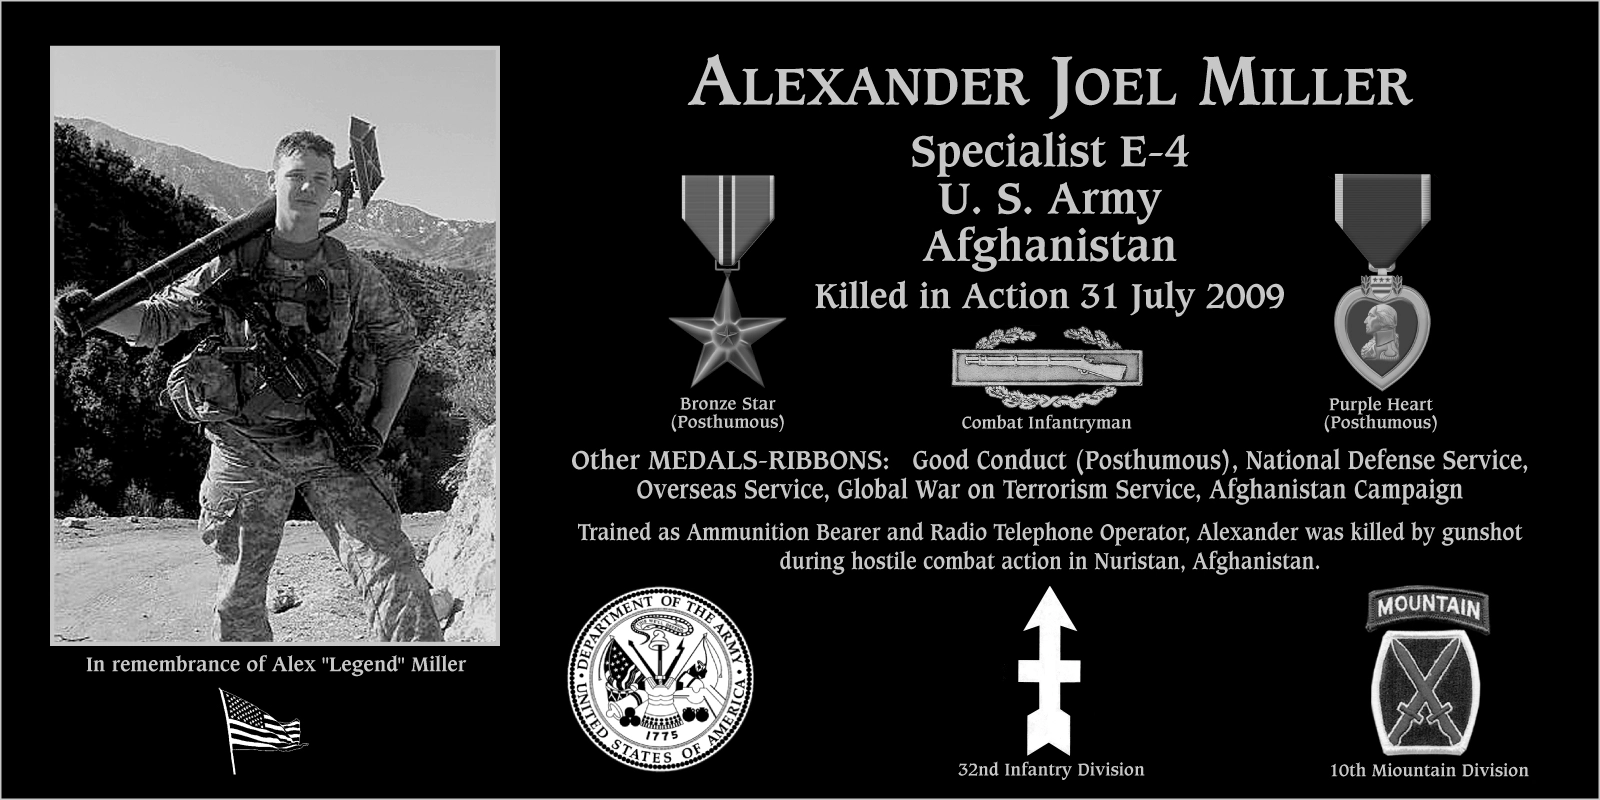 Alexander Joel “Legend” Miller